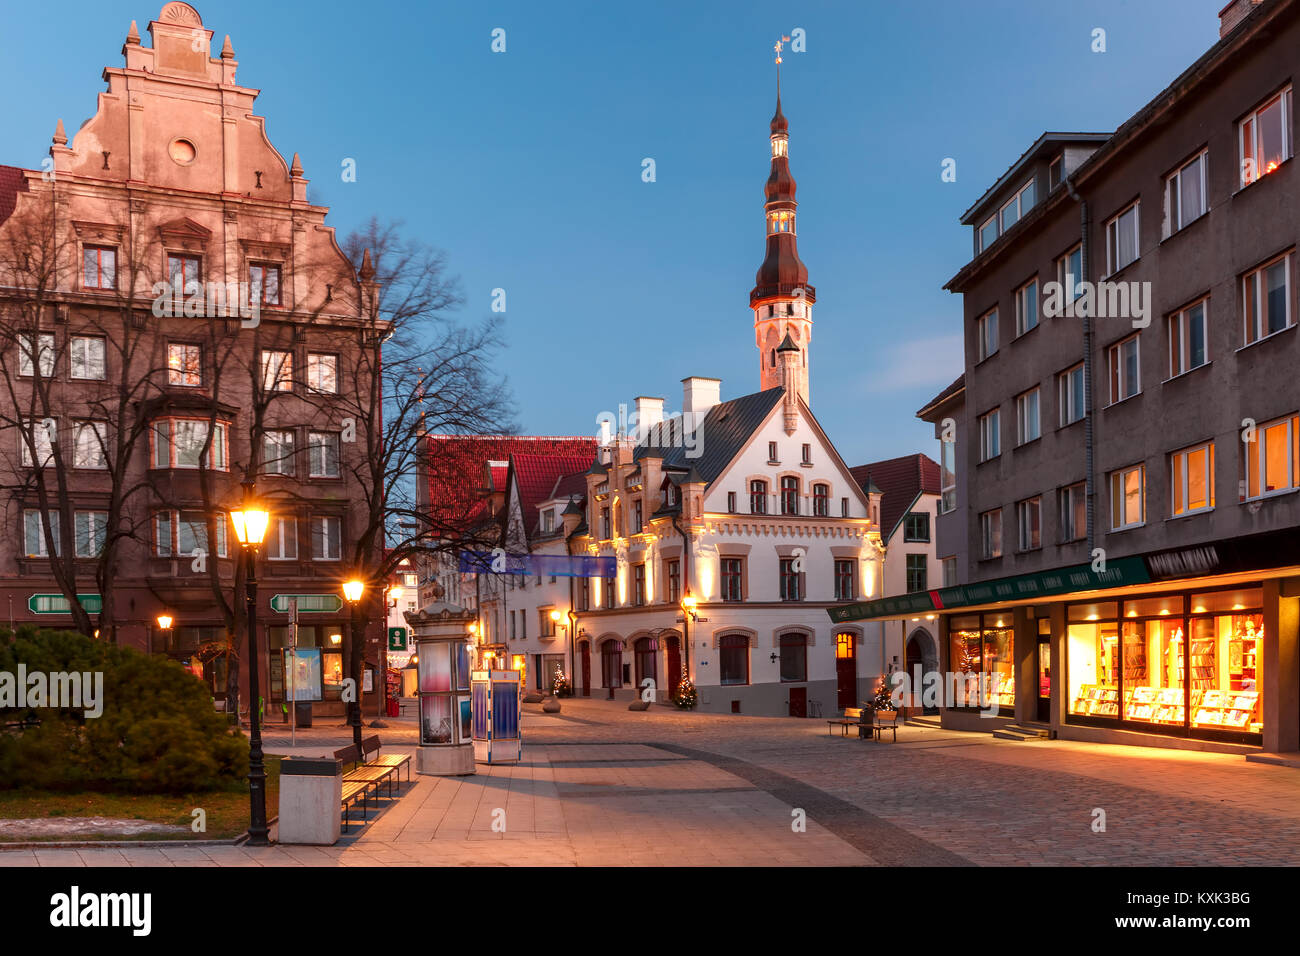 Morning street in the Old Town of Tallinn, Estonia Stock Photo